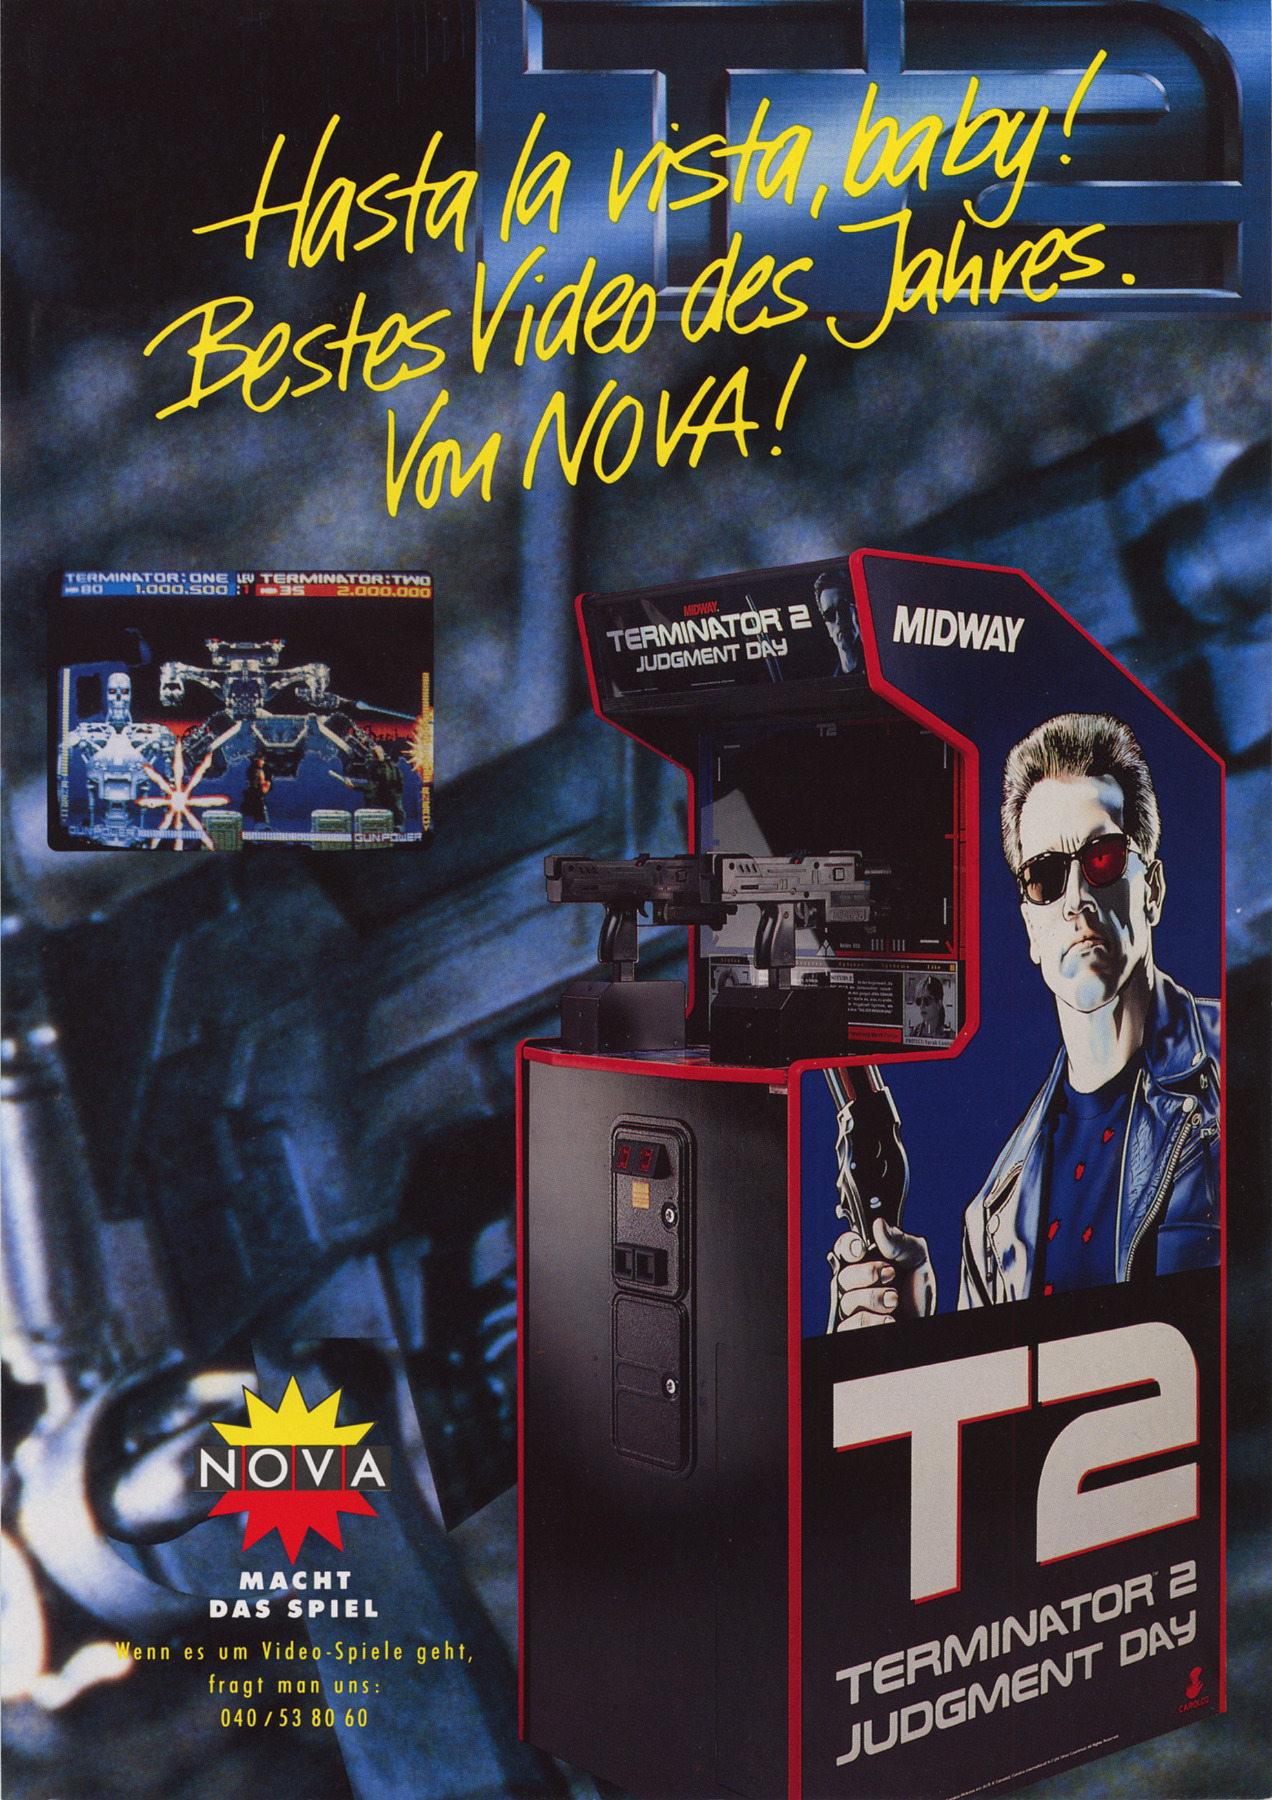 Игры terminator 2. The Terminator игра 1991. Terminator 2: Judgment Day (Arcade game). Игра Терминатор 2 Судный день. Терминатор аркадный автомат.